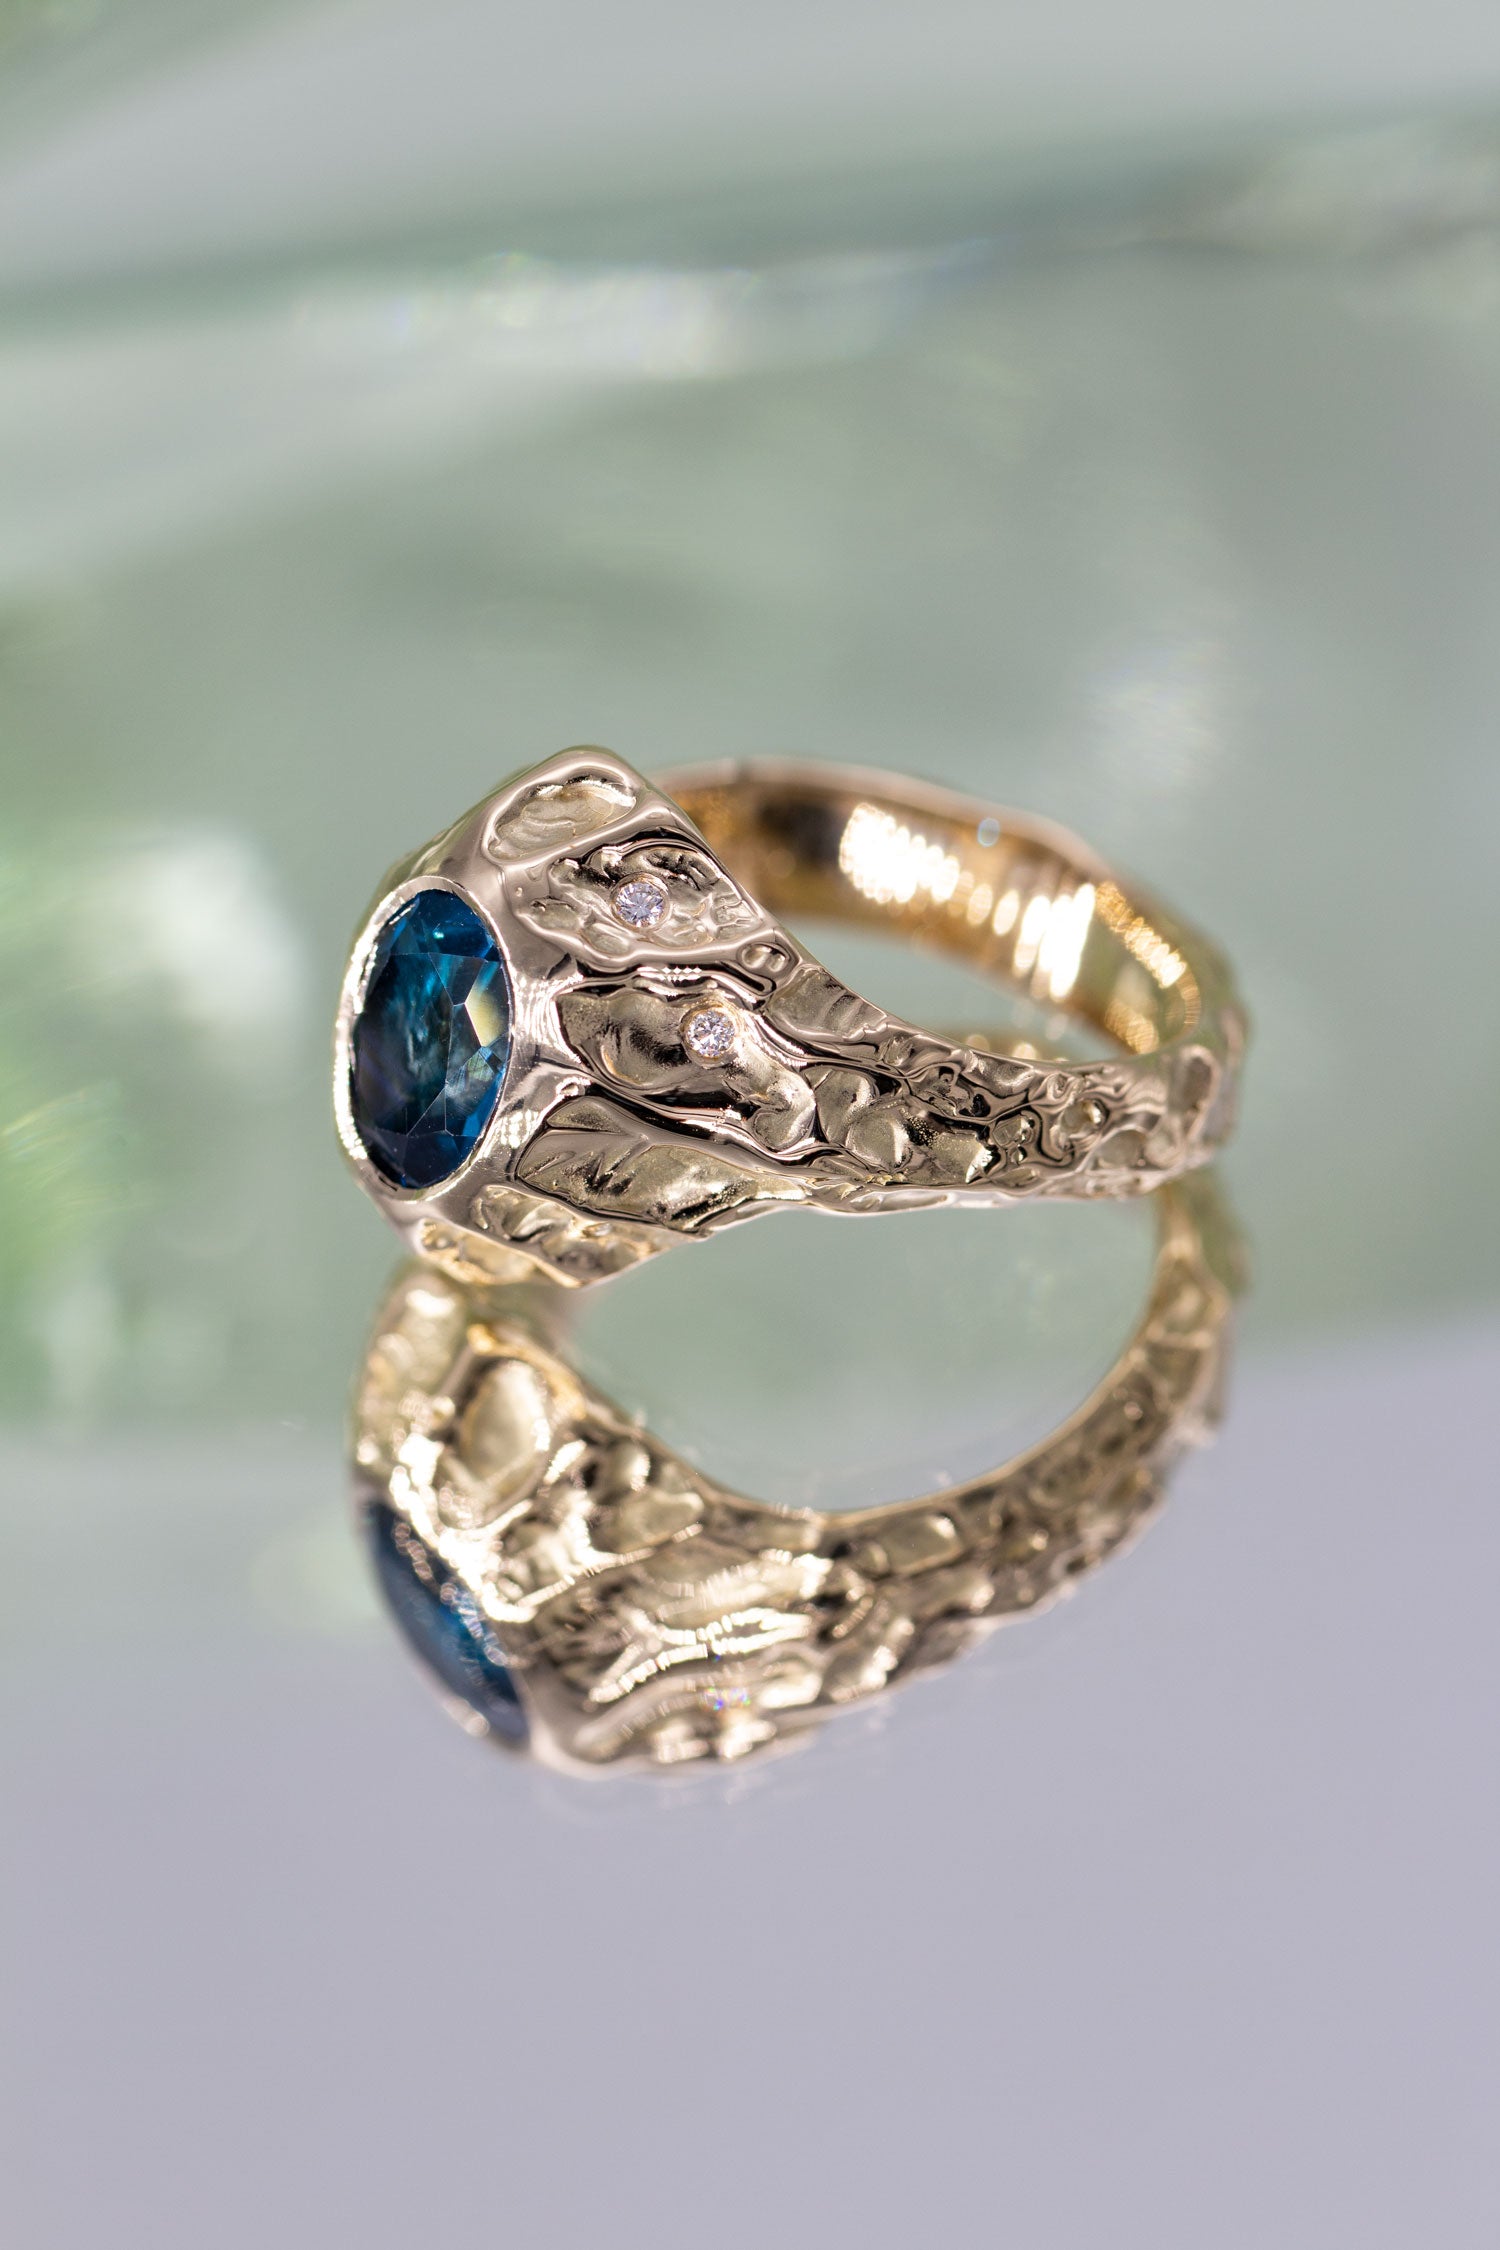 En stor guldring ligger med siden til på en spejlende, grønlig overflade. Ringen er med en blå topas og enkelte diamanter langs siden. Den er formgivet i et organisk udtryk. Design af Michell Liljefelt